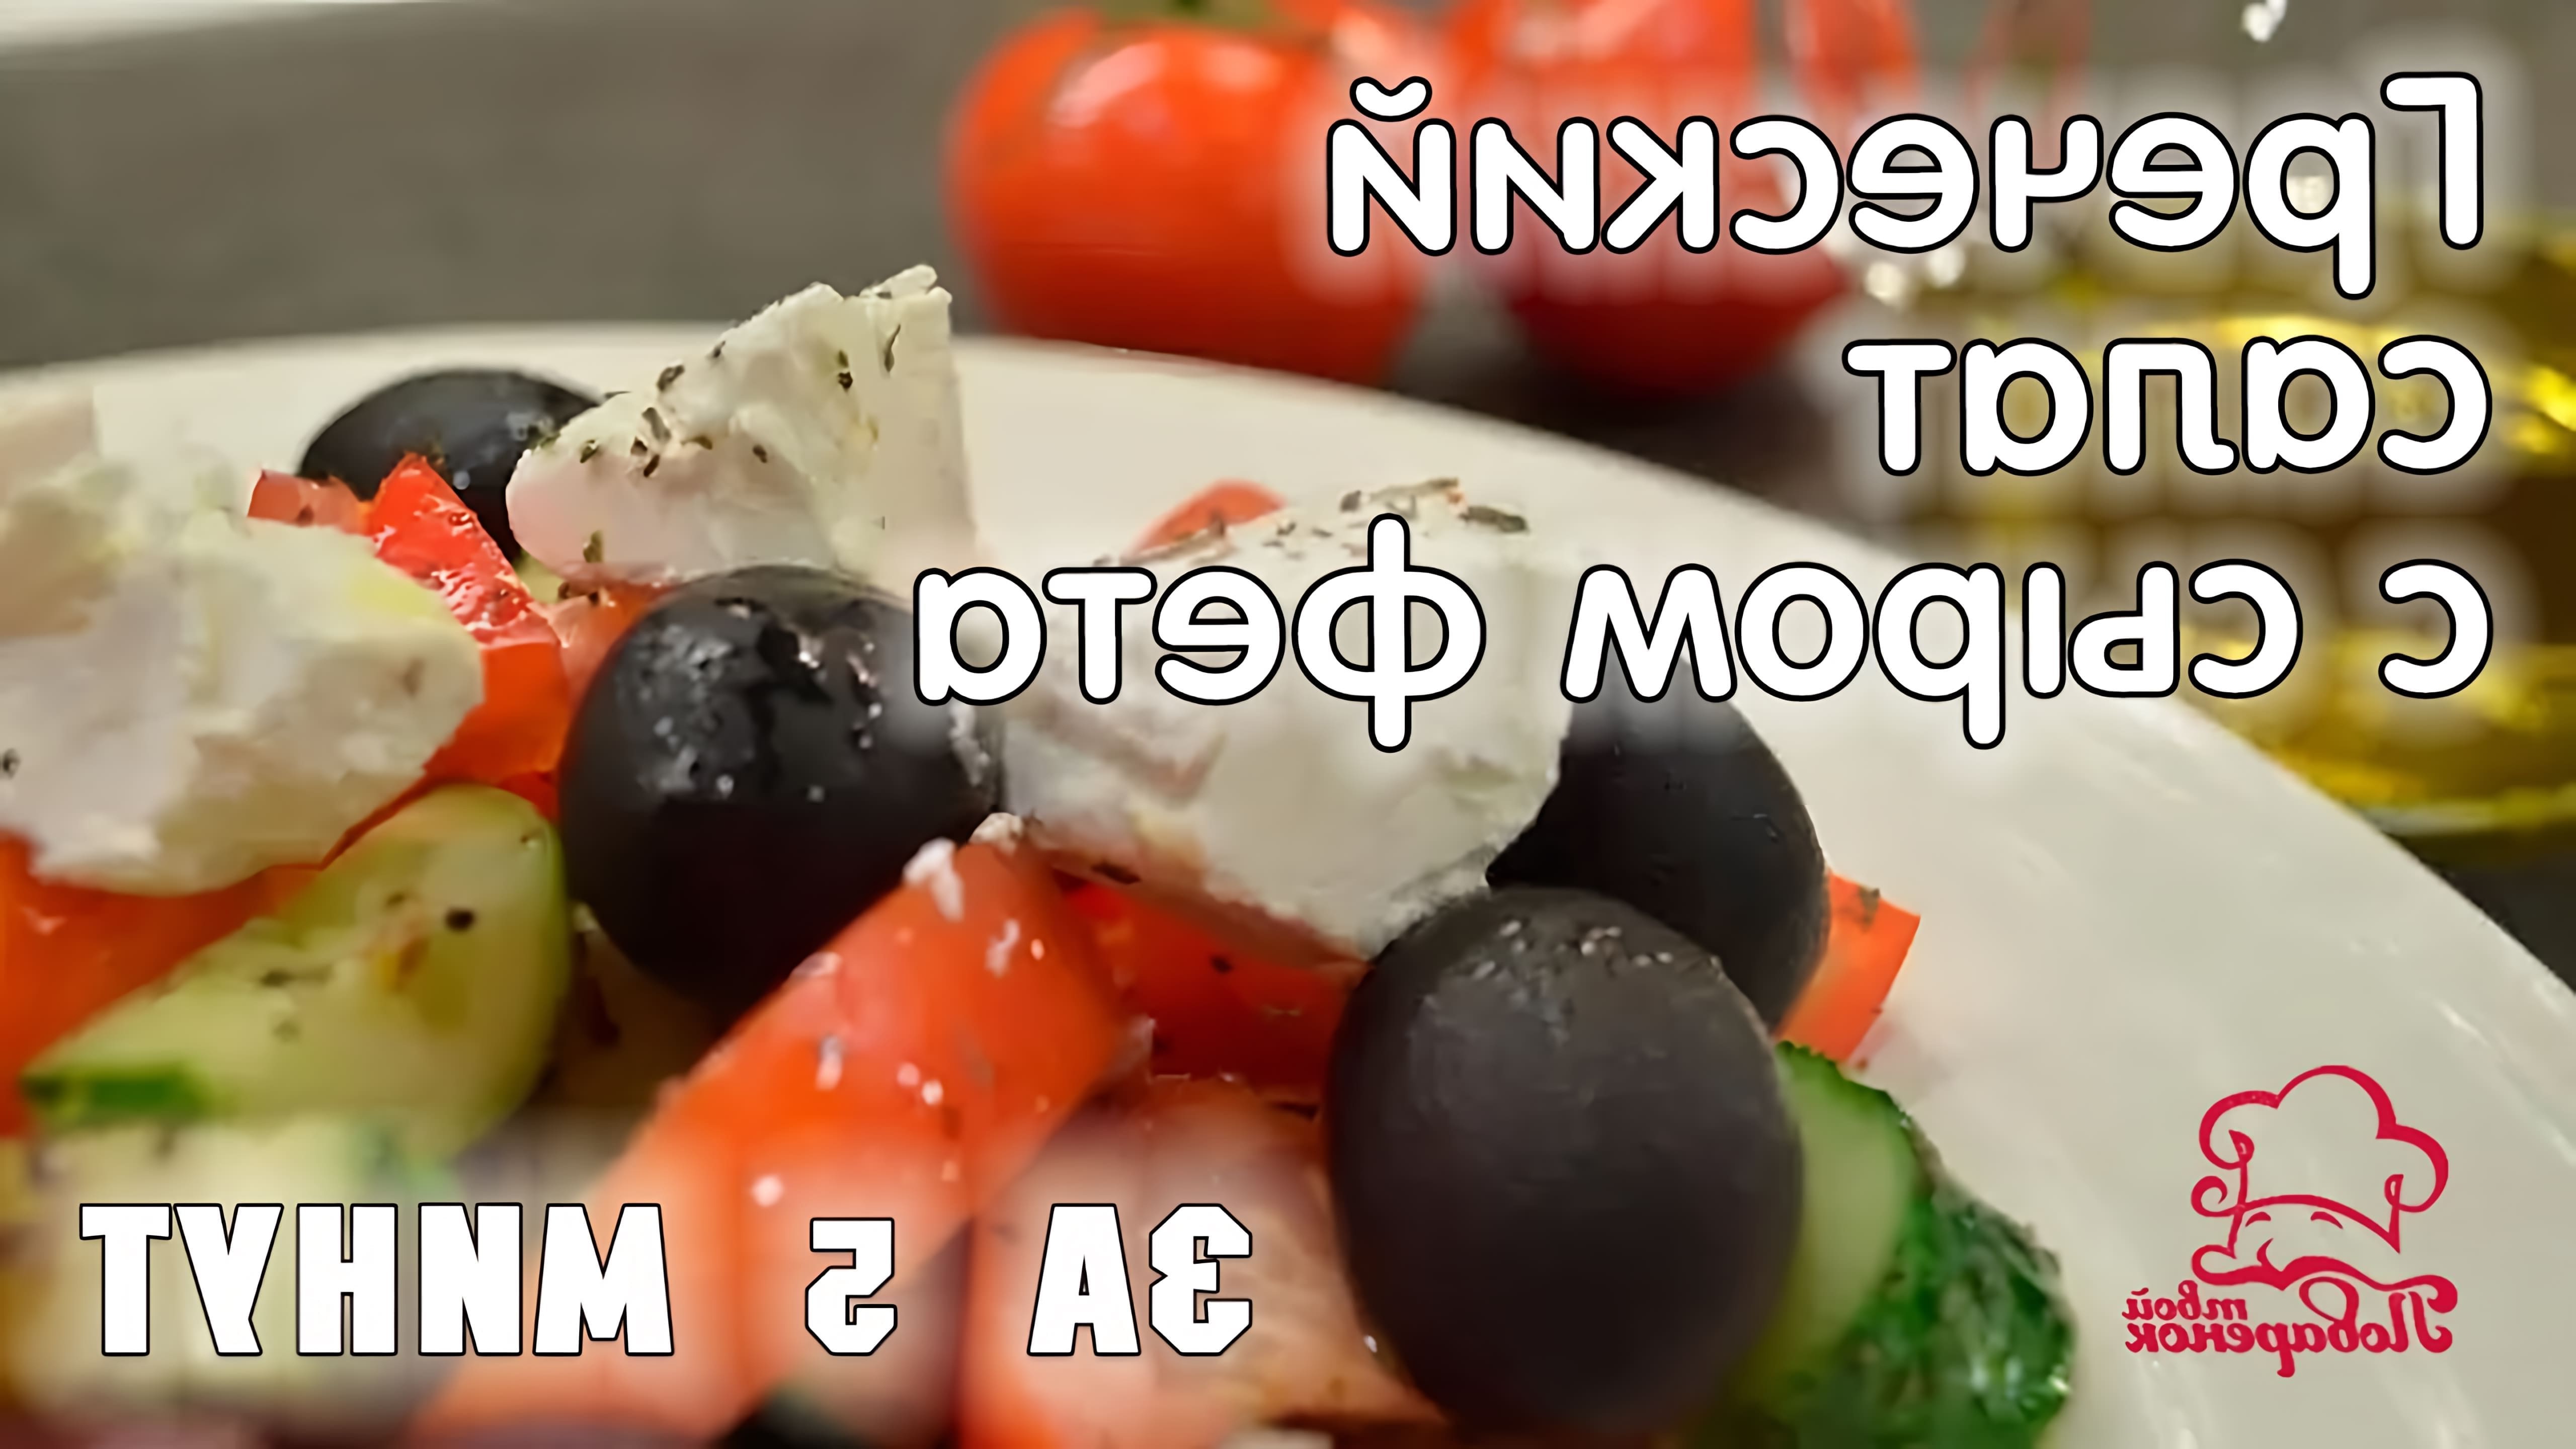 В этом видео демонстрируется простой и быстрый рецепт классического греческого салата, который можно приготовить всего за 5 минут